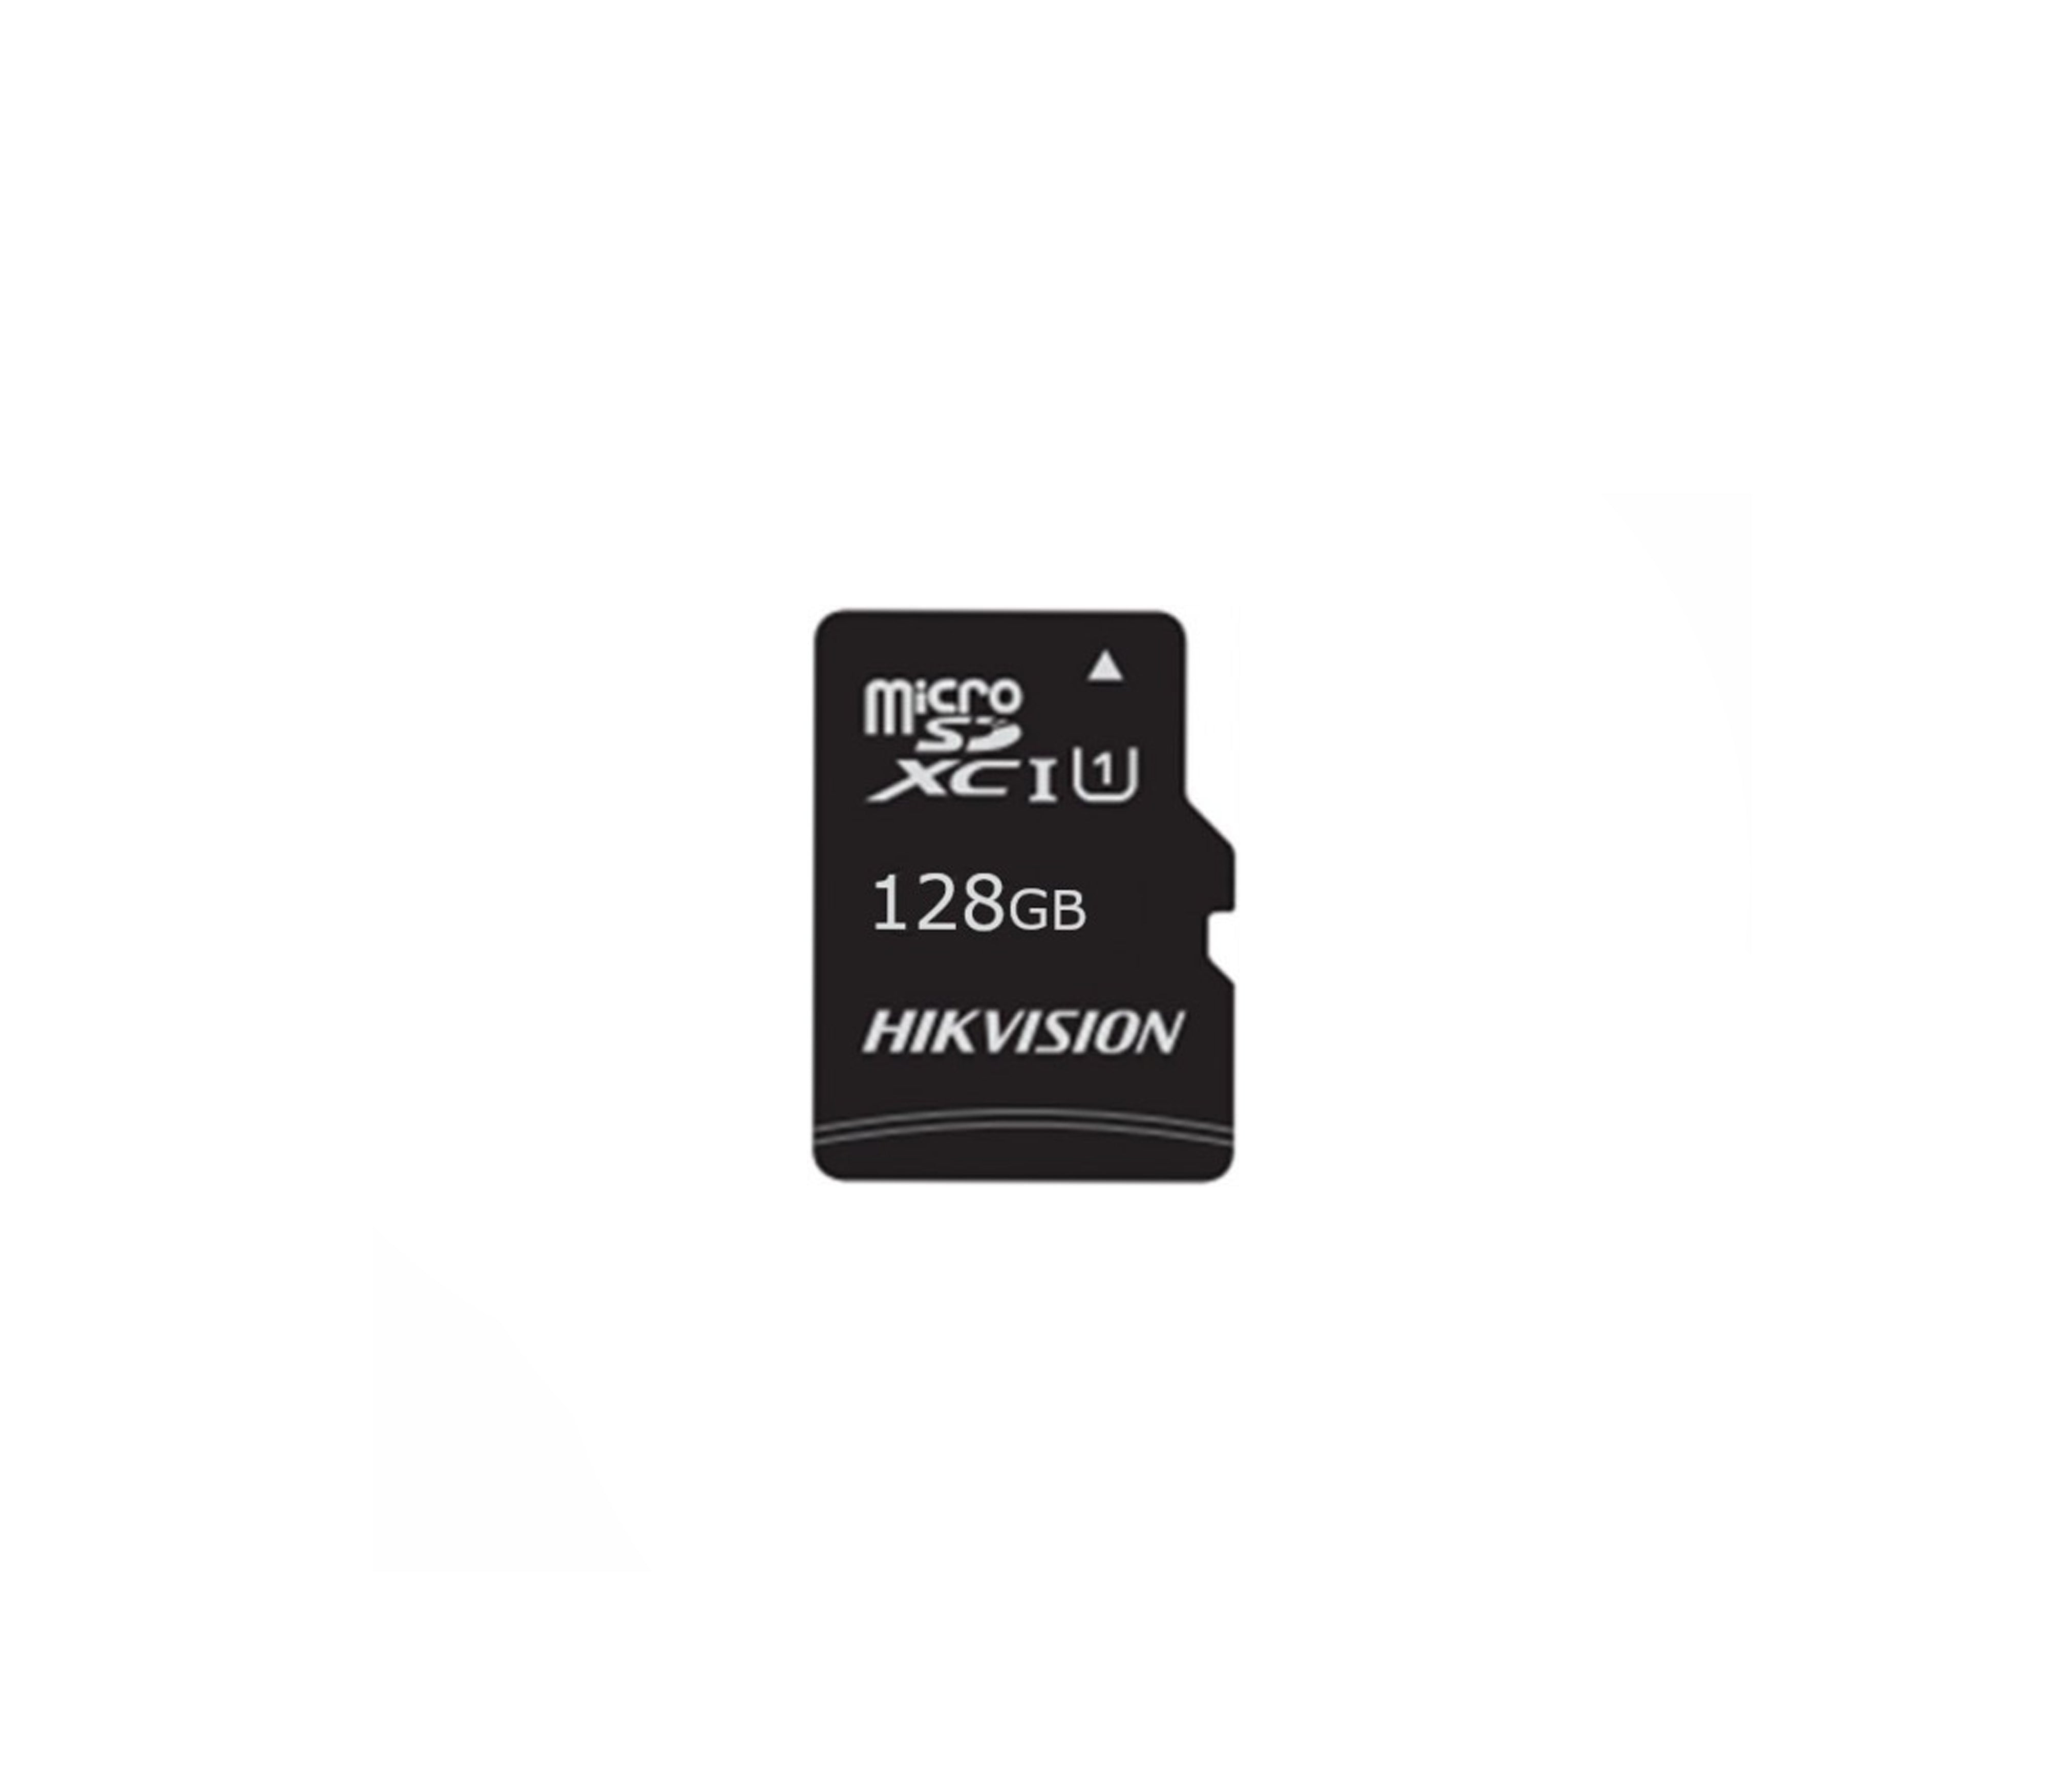 Tarjeta de memoria MicroSD 128 GB I HS-TF-C1STD-128G - Tienda de Seguridad